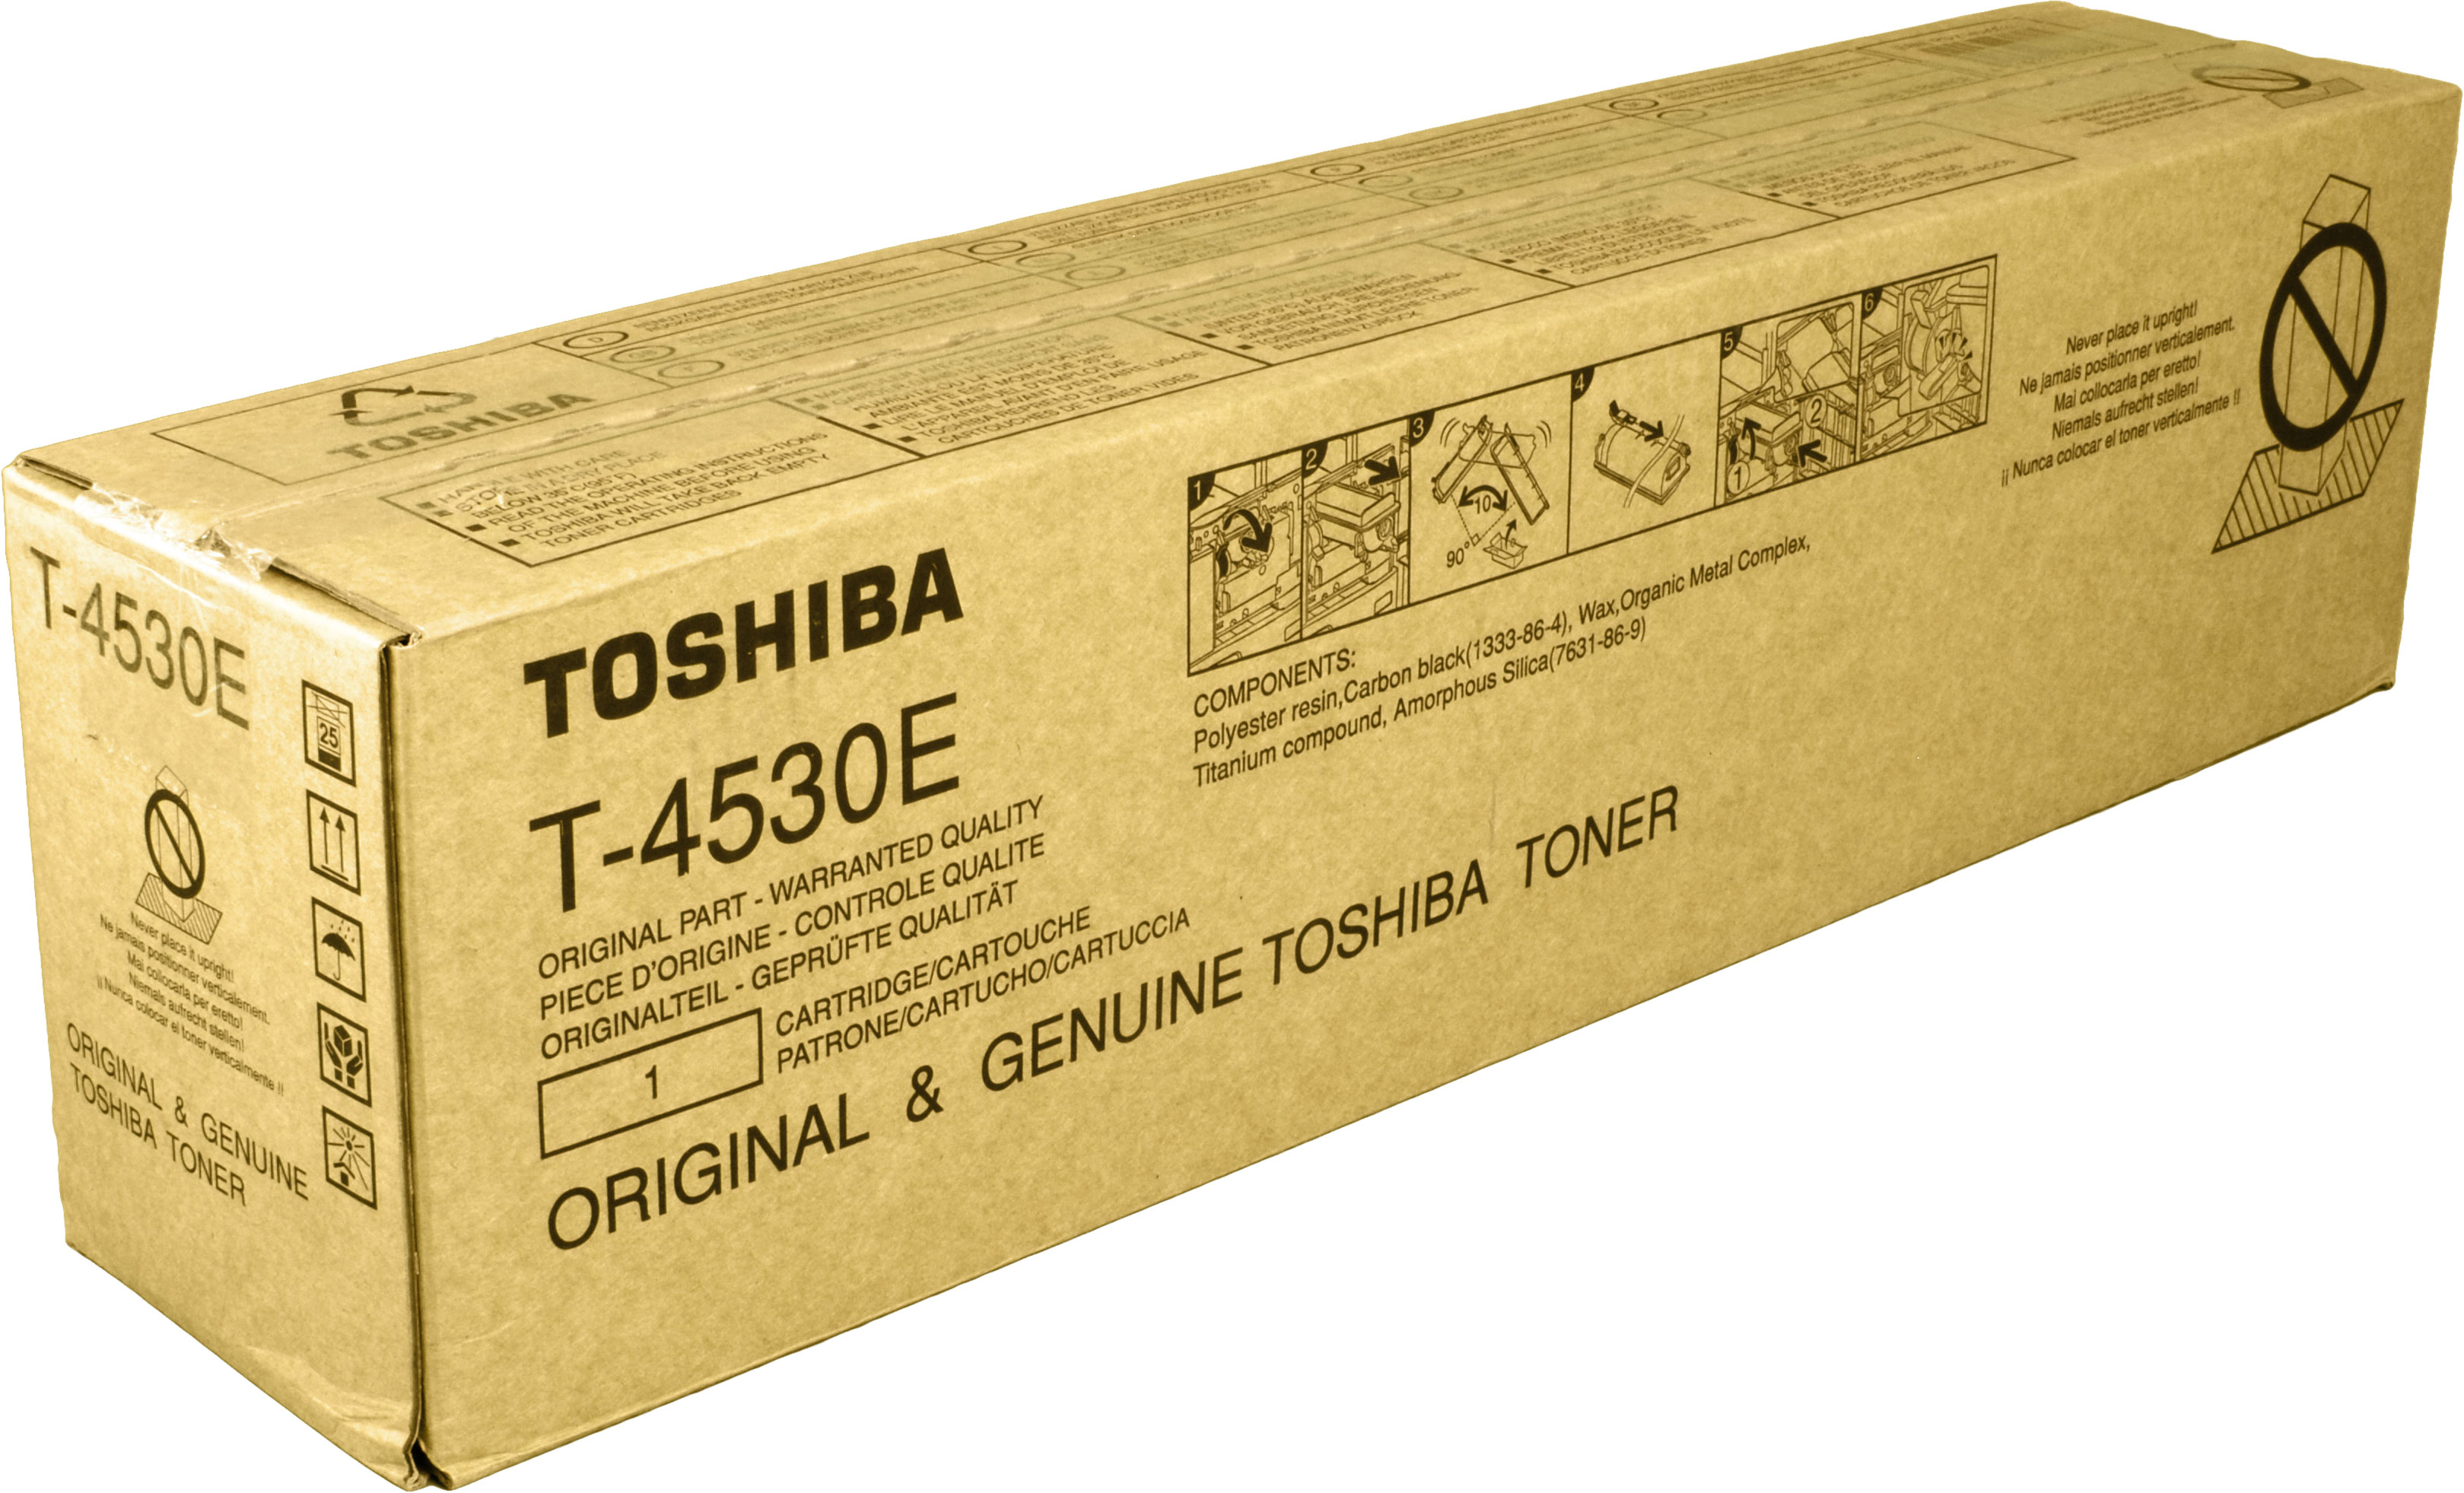 T-4530E schwarz (6AK00000134) TOSHIBA Toner